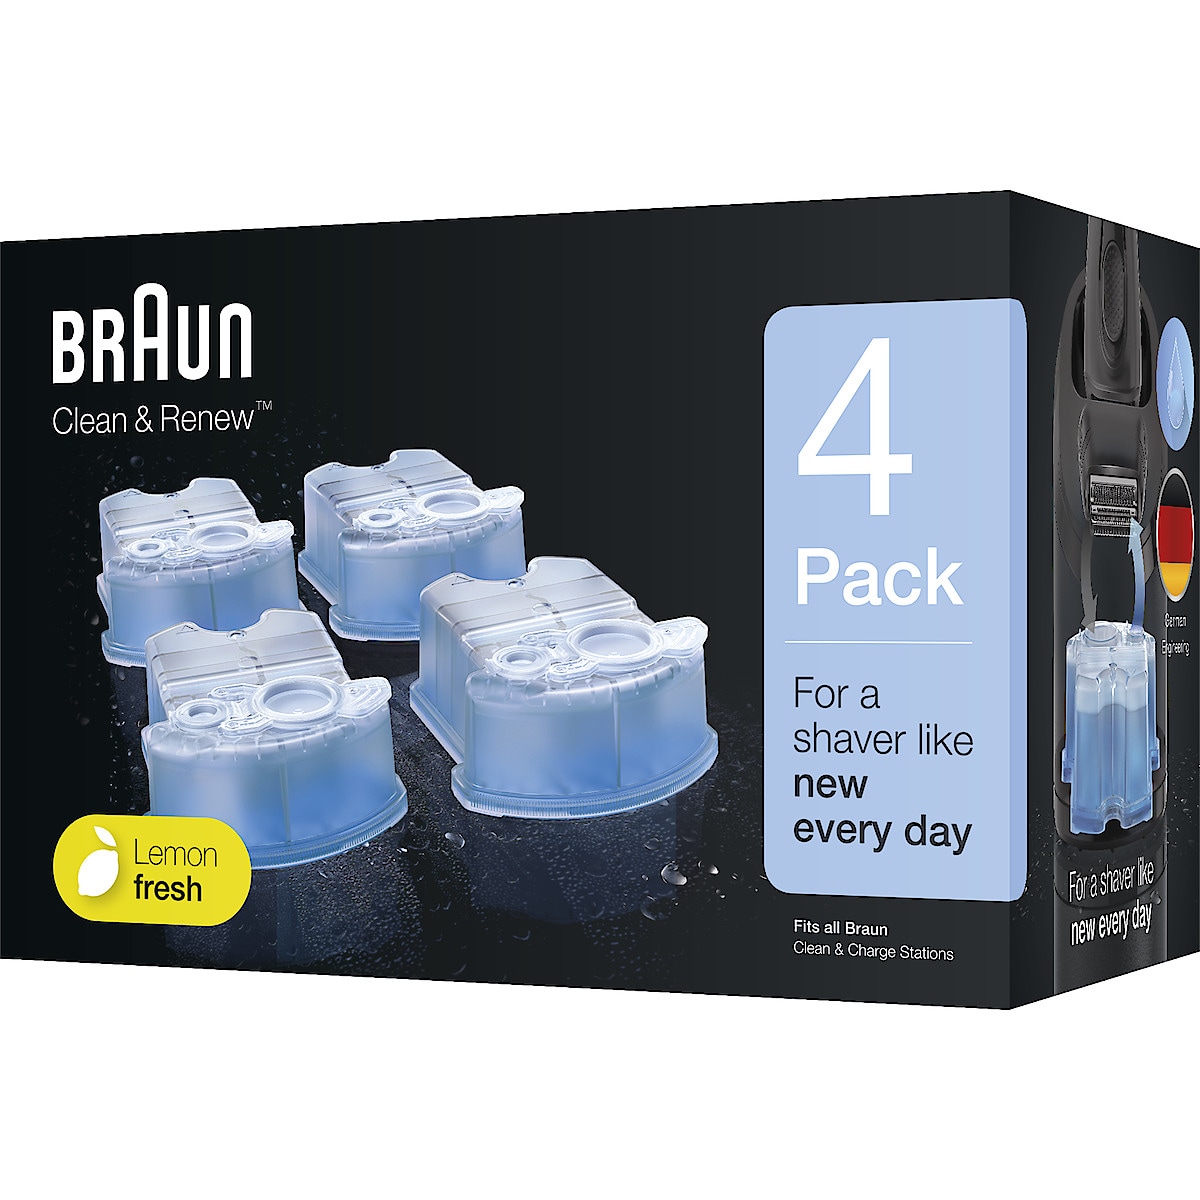 Puhdistusaine, vaihtopakkaus, Braun Clean & Renew CCR4